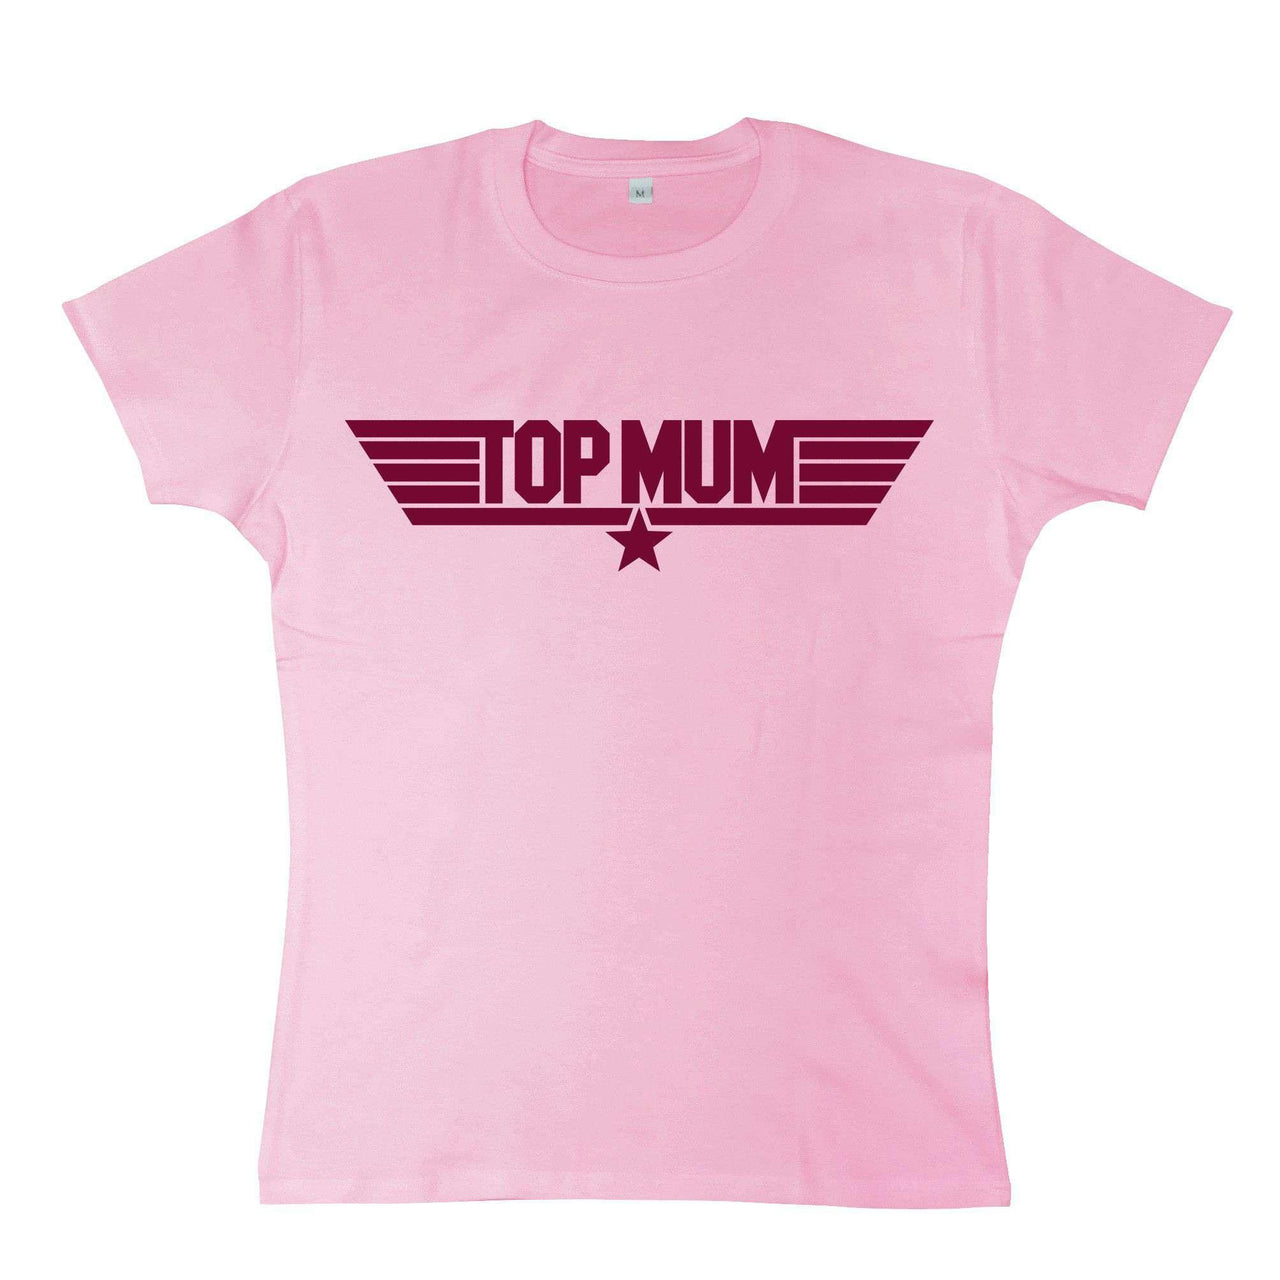 Top Mum Womens T-Shirt 8Ball